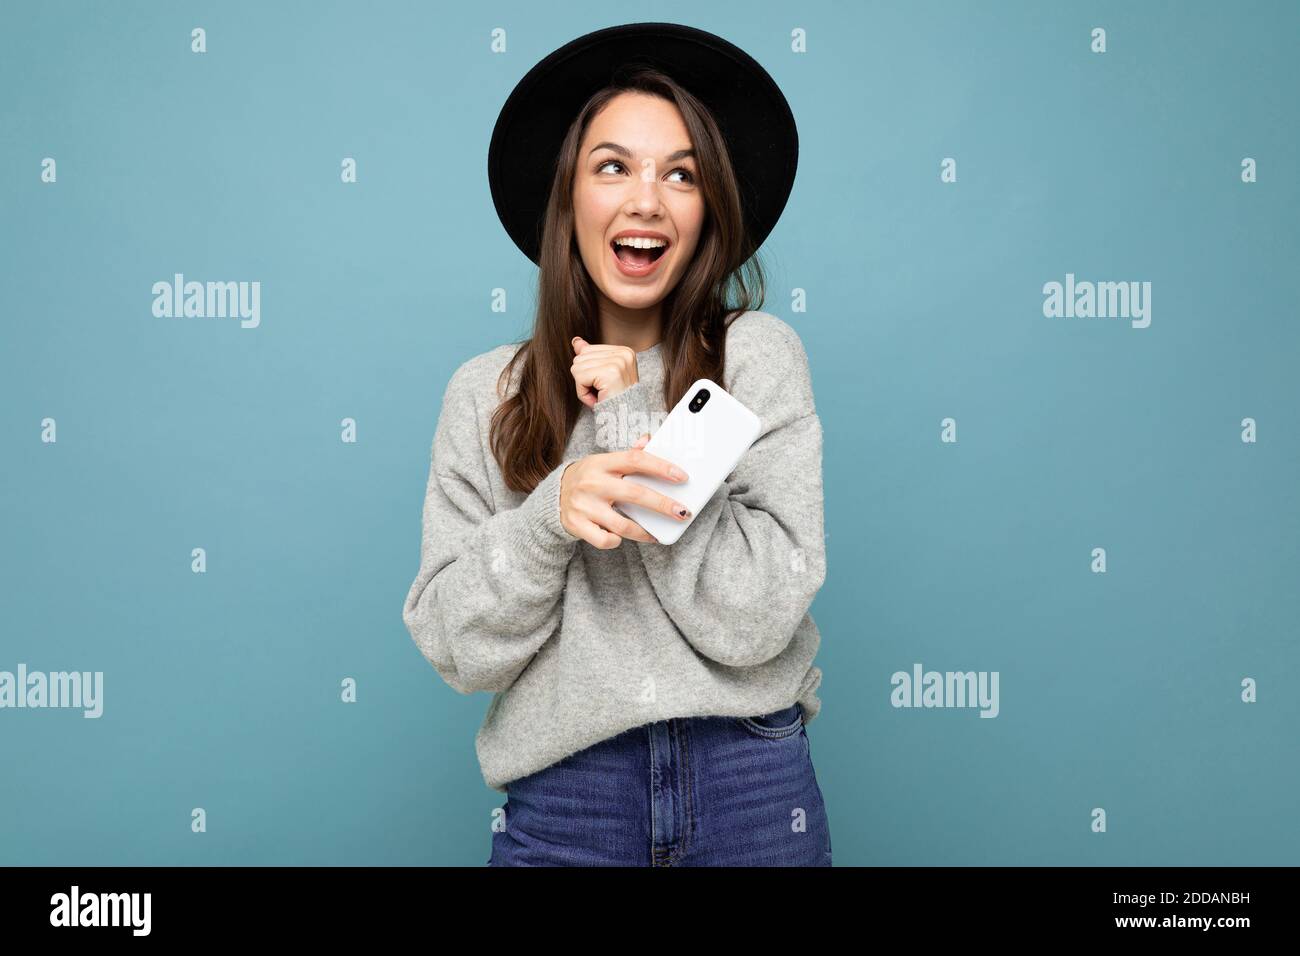 Image d'une jeune femme heureuse et belle posant isolée arrière-plan mural bleu à l'aide d'un téléphone portable Banque D'Images